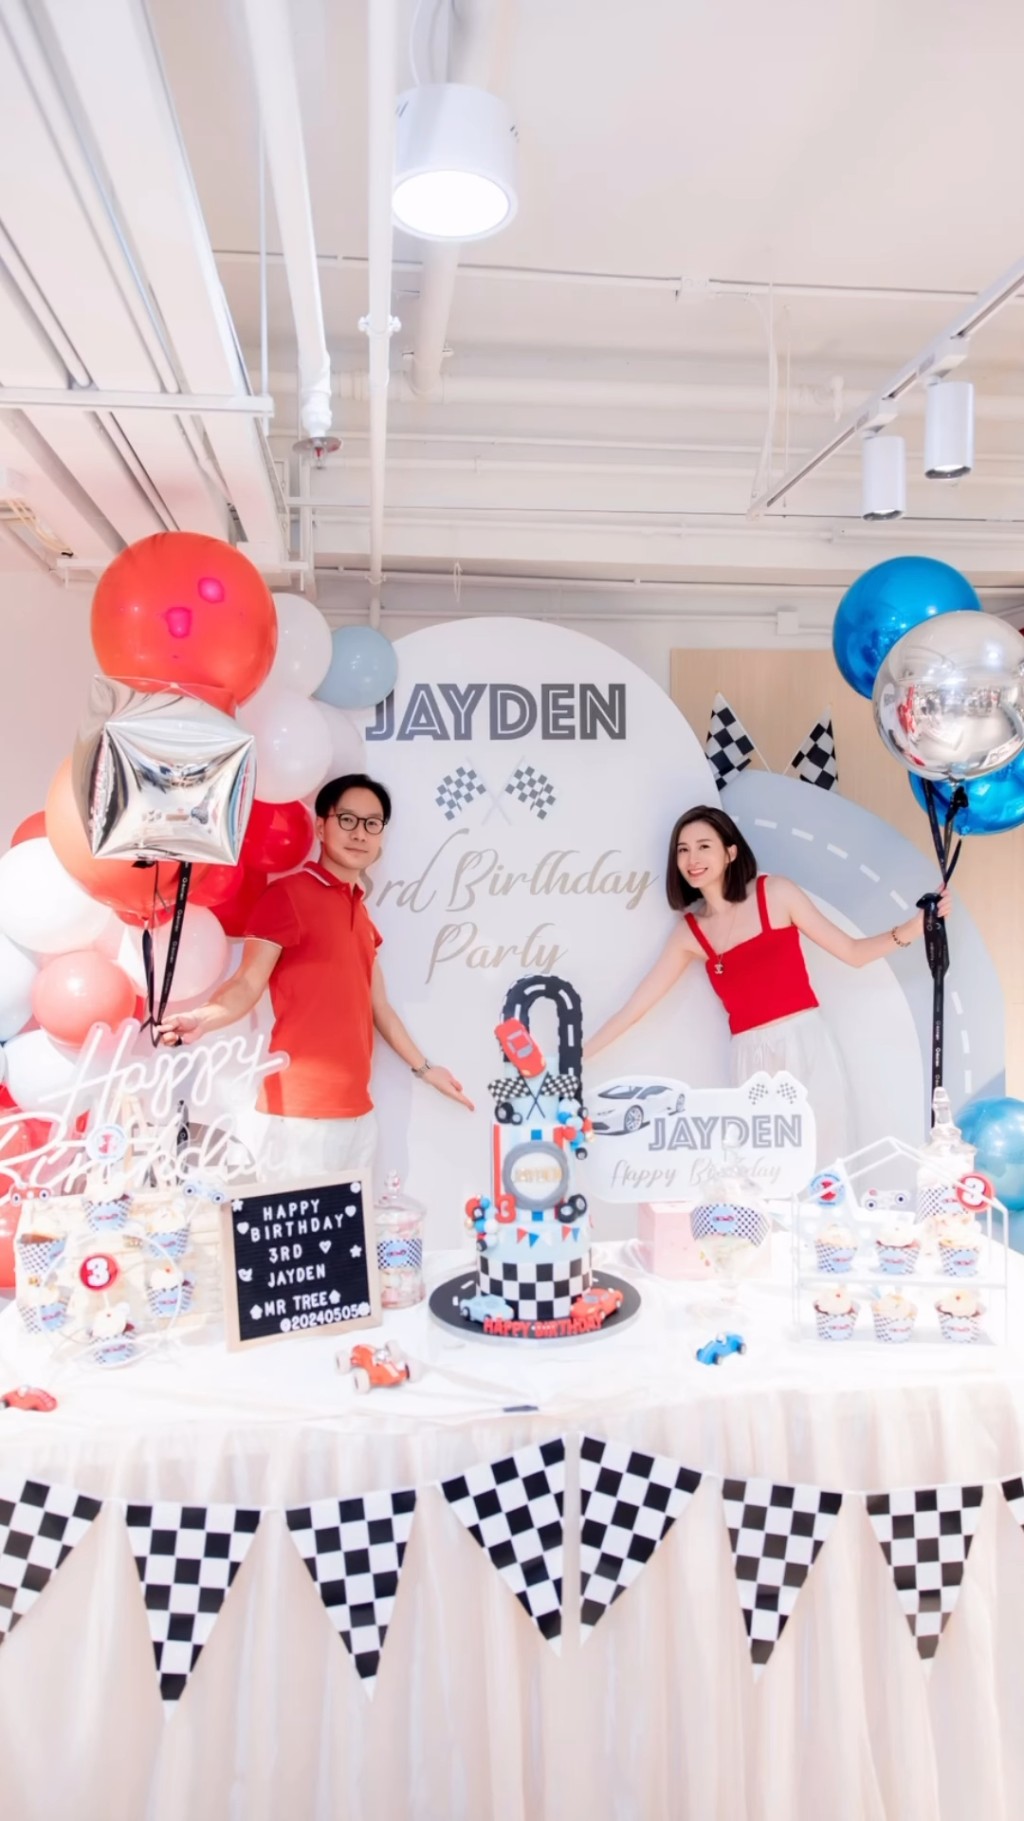 沈卓盈與老公杜灝標（Calvin）為囝囝Jayden在「大樹先生的家」舉行生日會，全場布置及cup cake和糖果也是Jayden最喜愛的賽車。